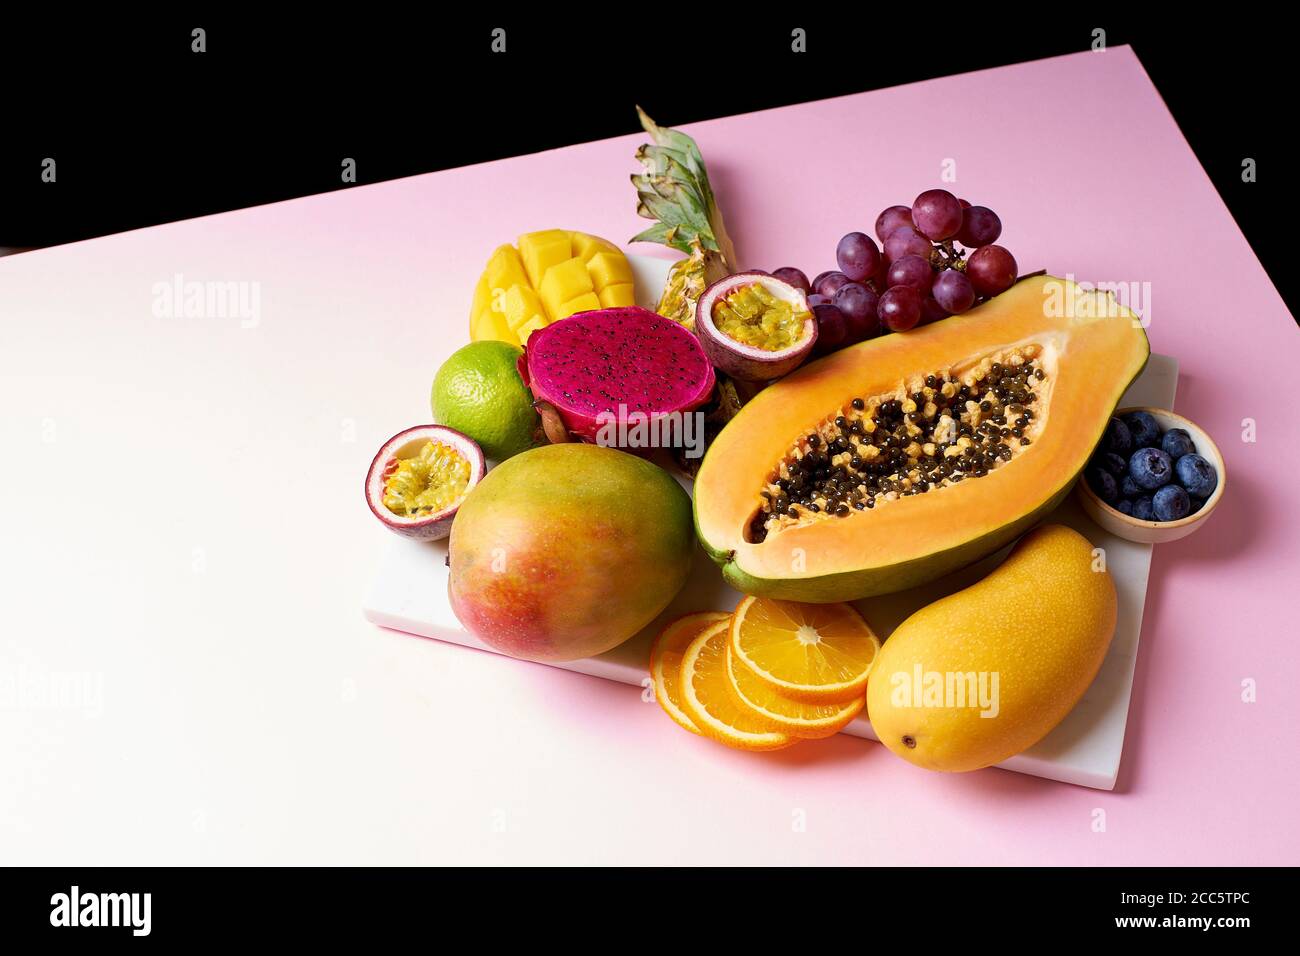 Las frutas tropicales siguen siendo de mango, papaya, pitahaya, fruta de la pasión, uvas, lima y piña. Plato de fruta Foto de stock